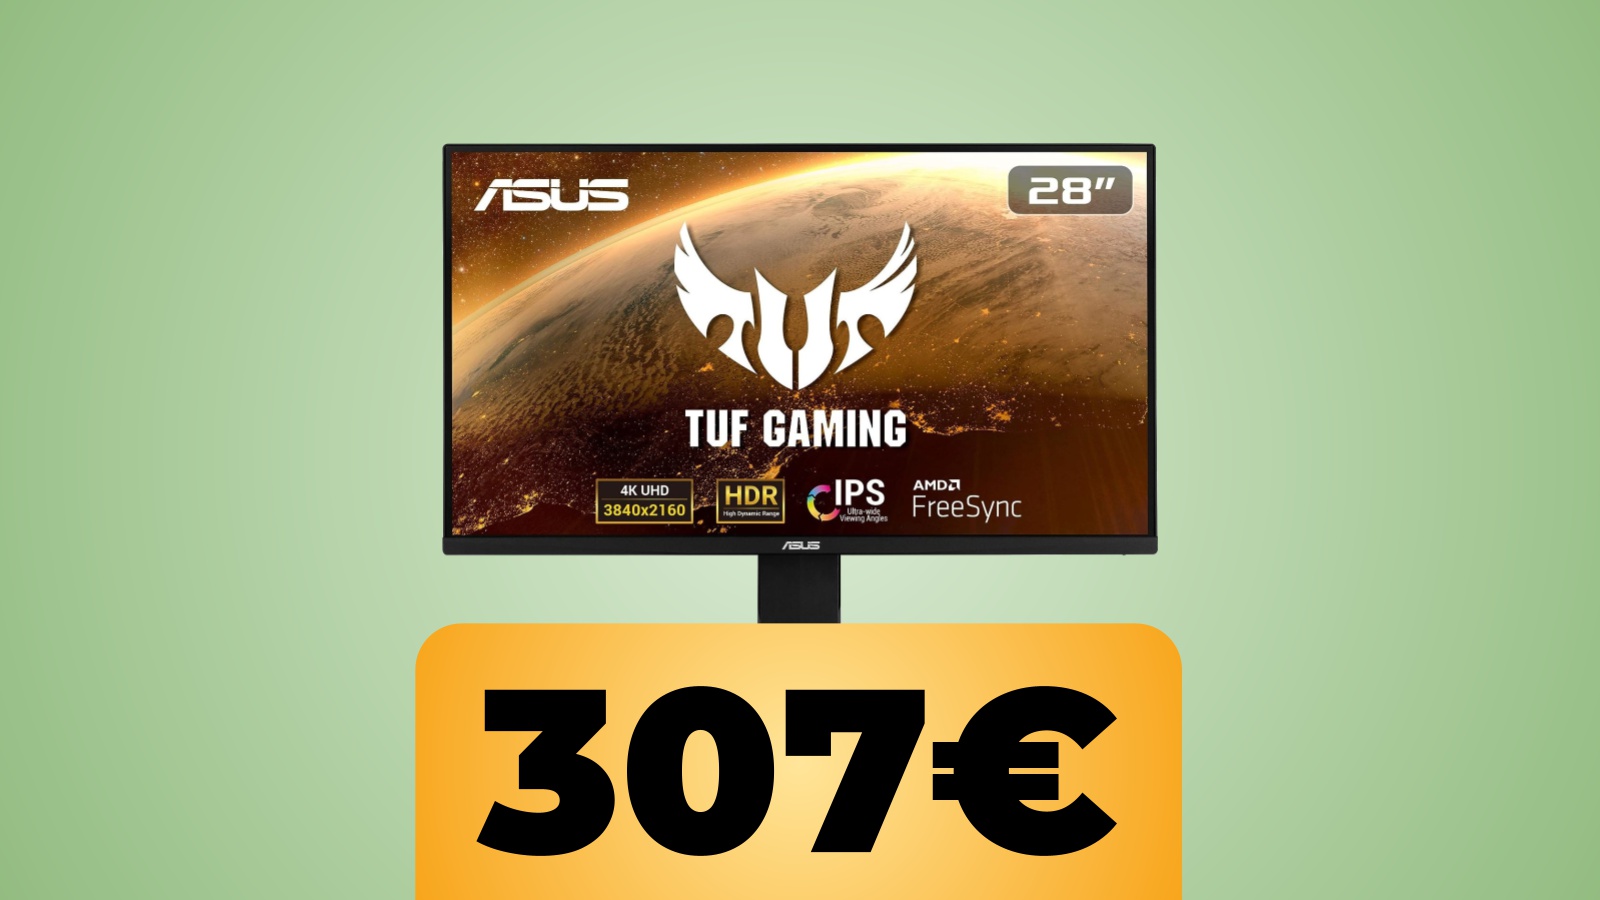 Monitor ASUS TUF Gaming 28 pollici 4K e 60 Hz: lo sconto Amazon per le Offerte di Primavera